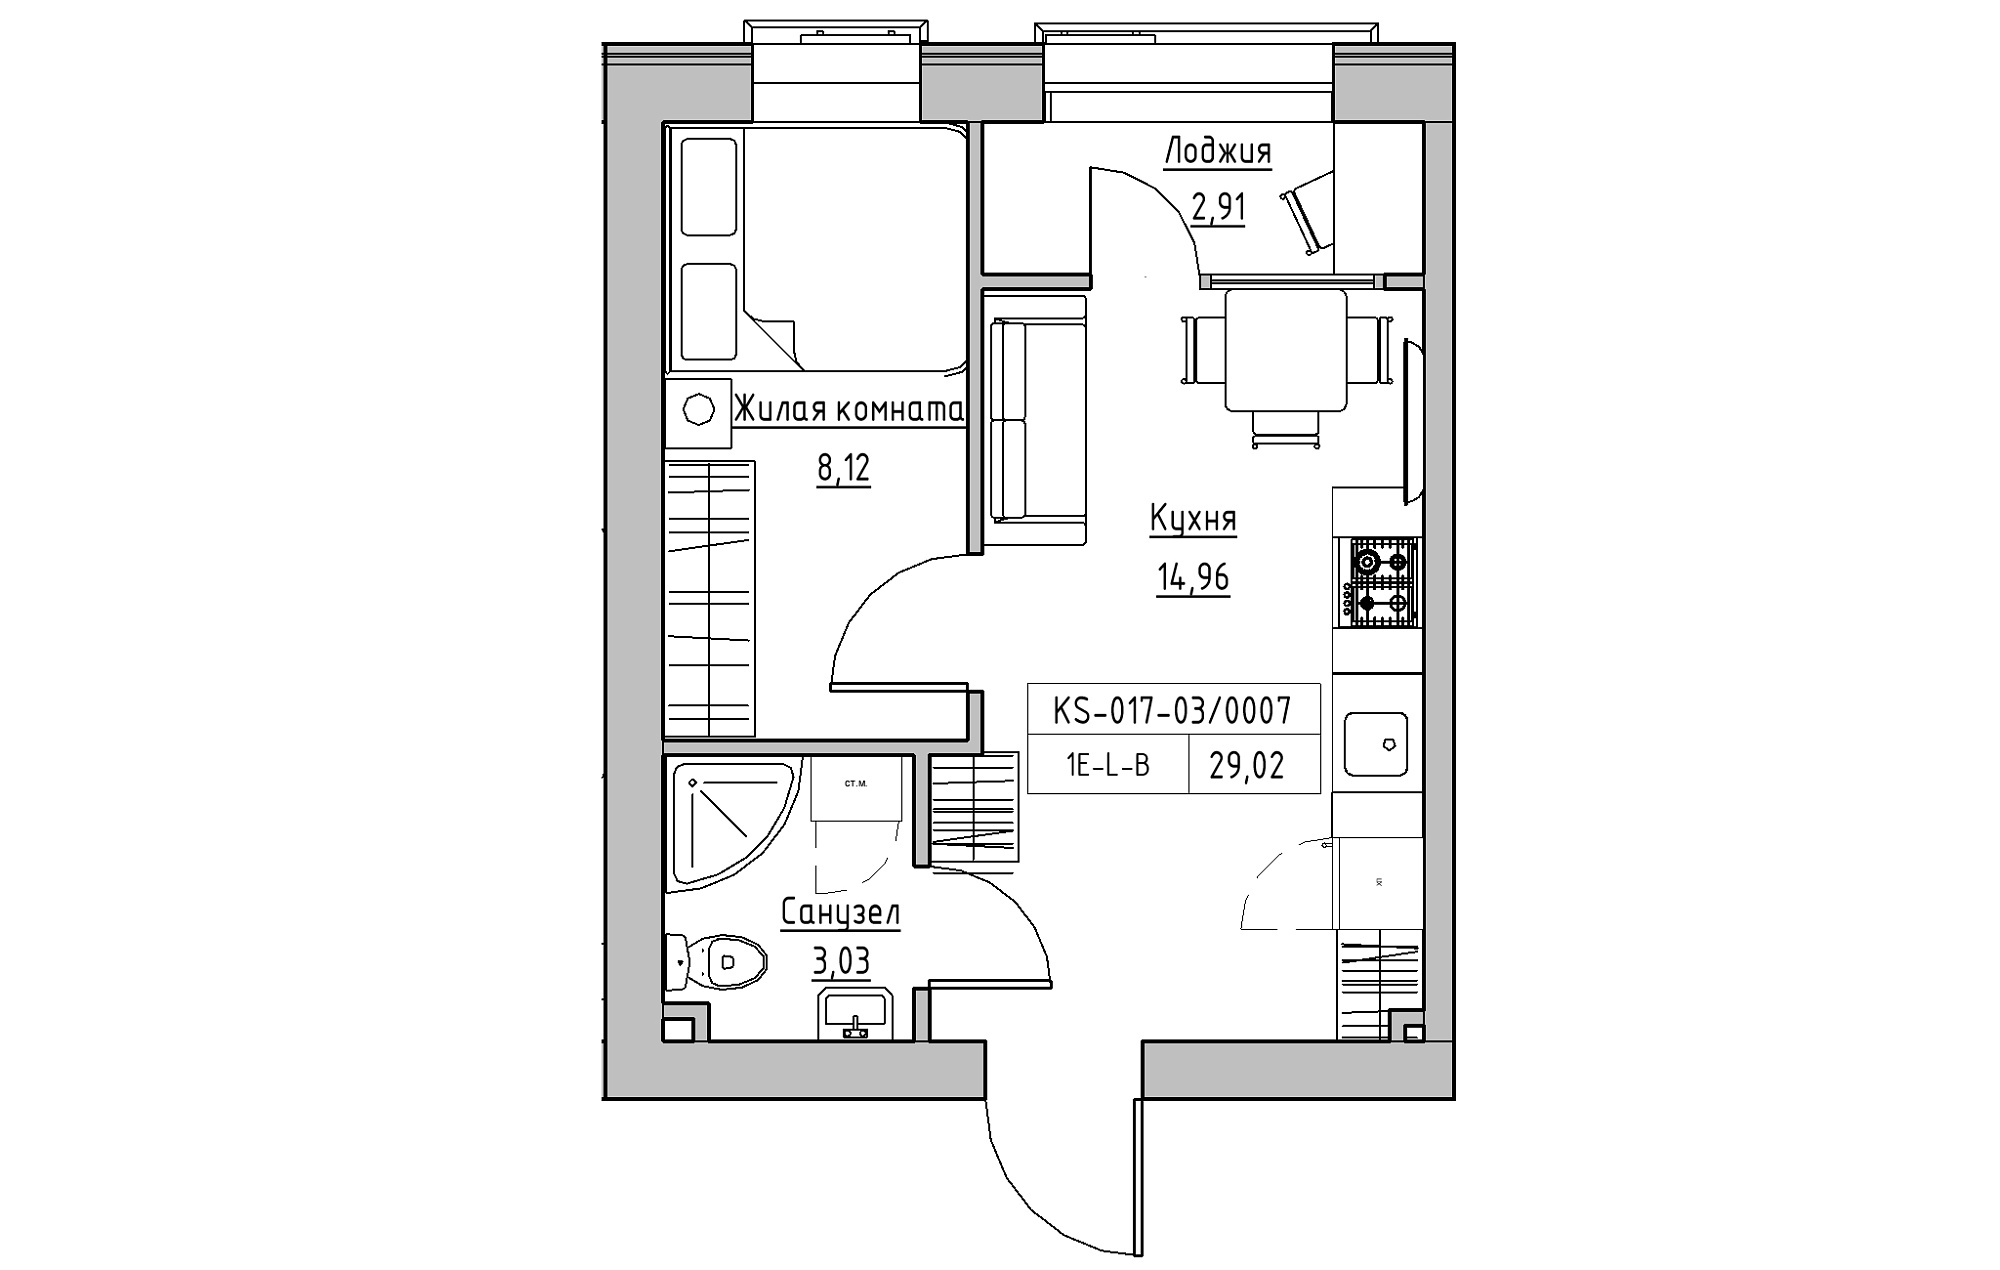 Планування 1-к квартира площею 29.02м2, KS-017-03/0007.